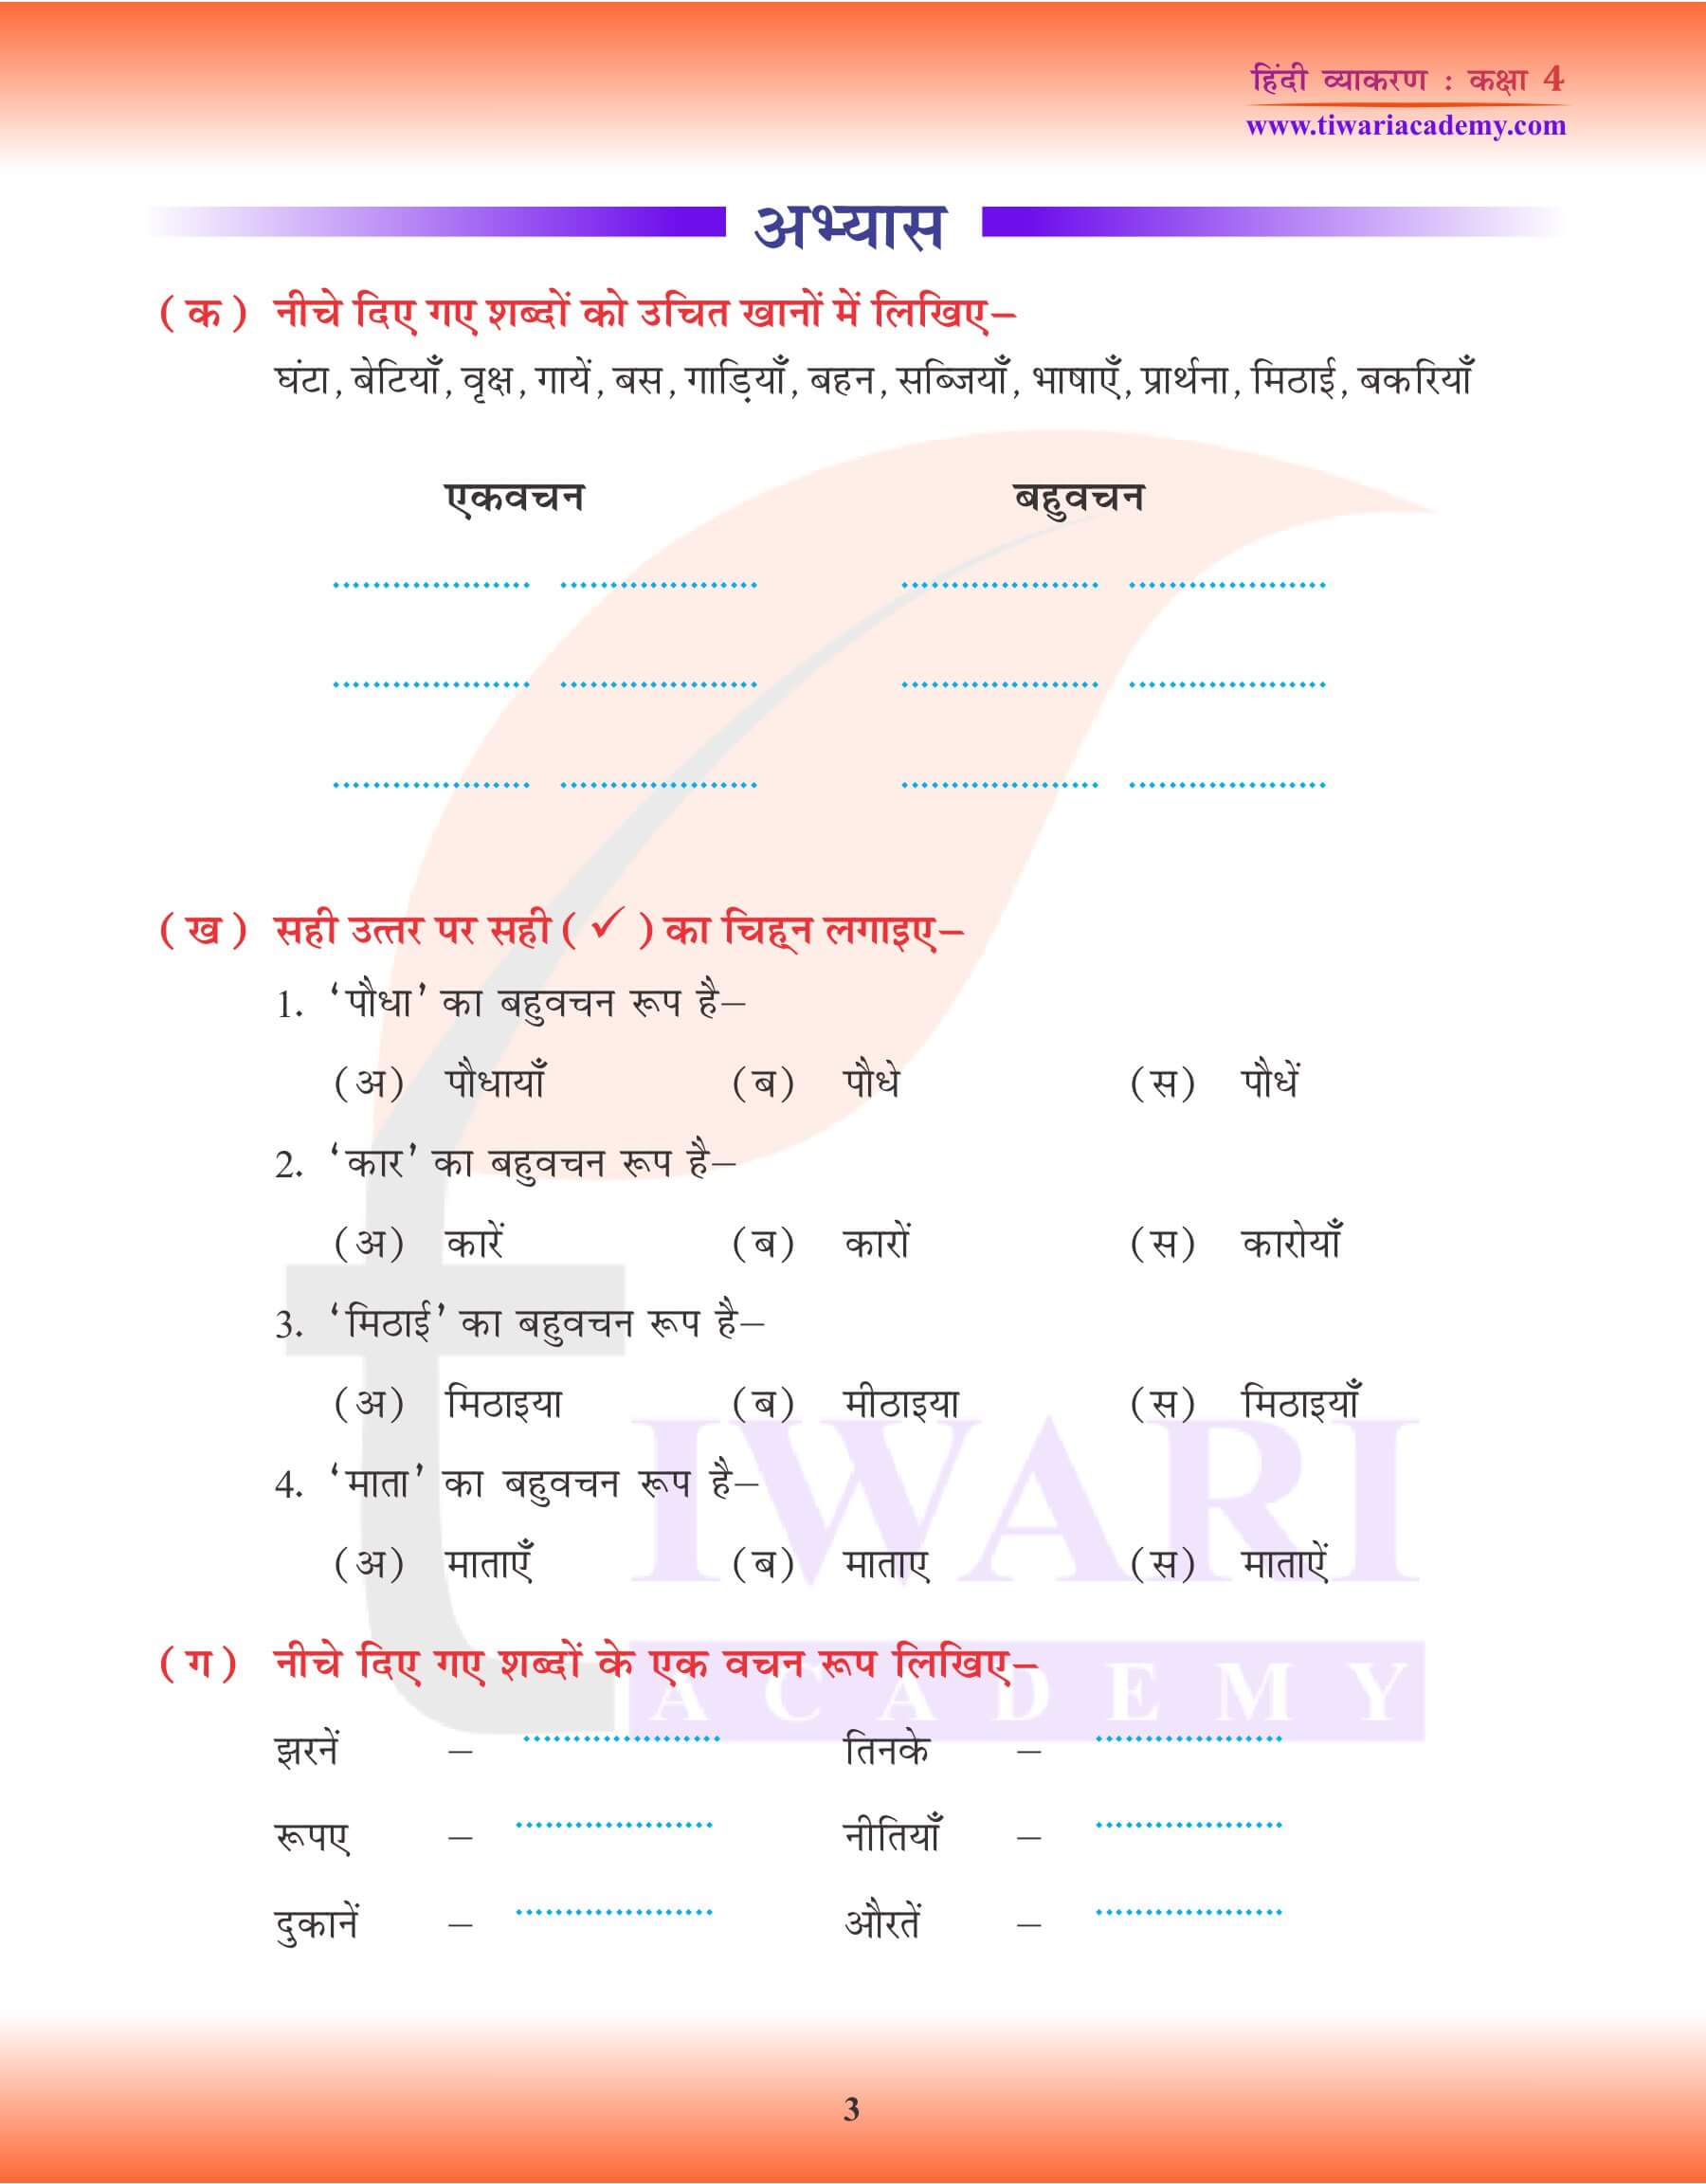 कक्षा 4 हिंदी व्याकरण में एकवचन तथा बहुवचन